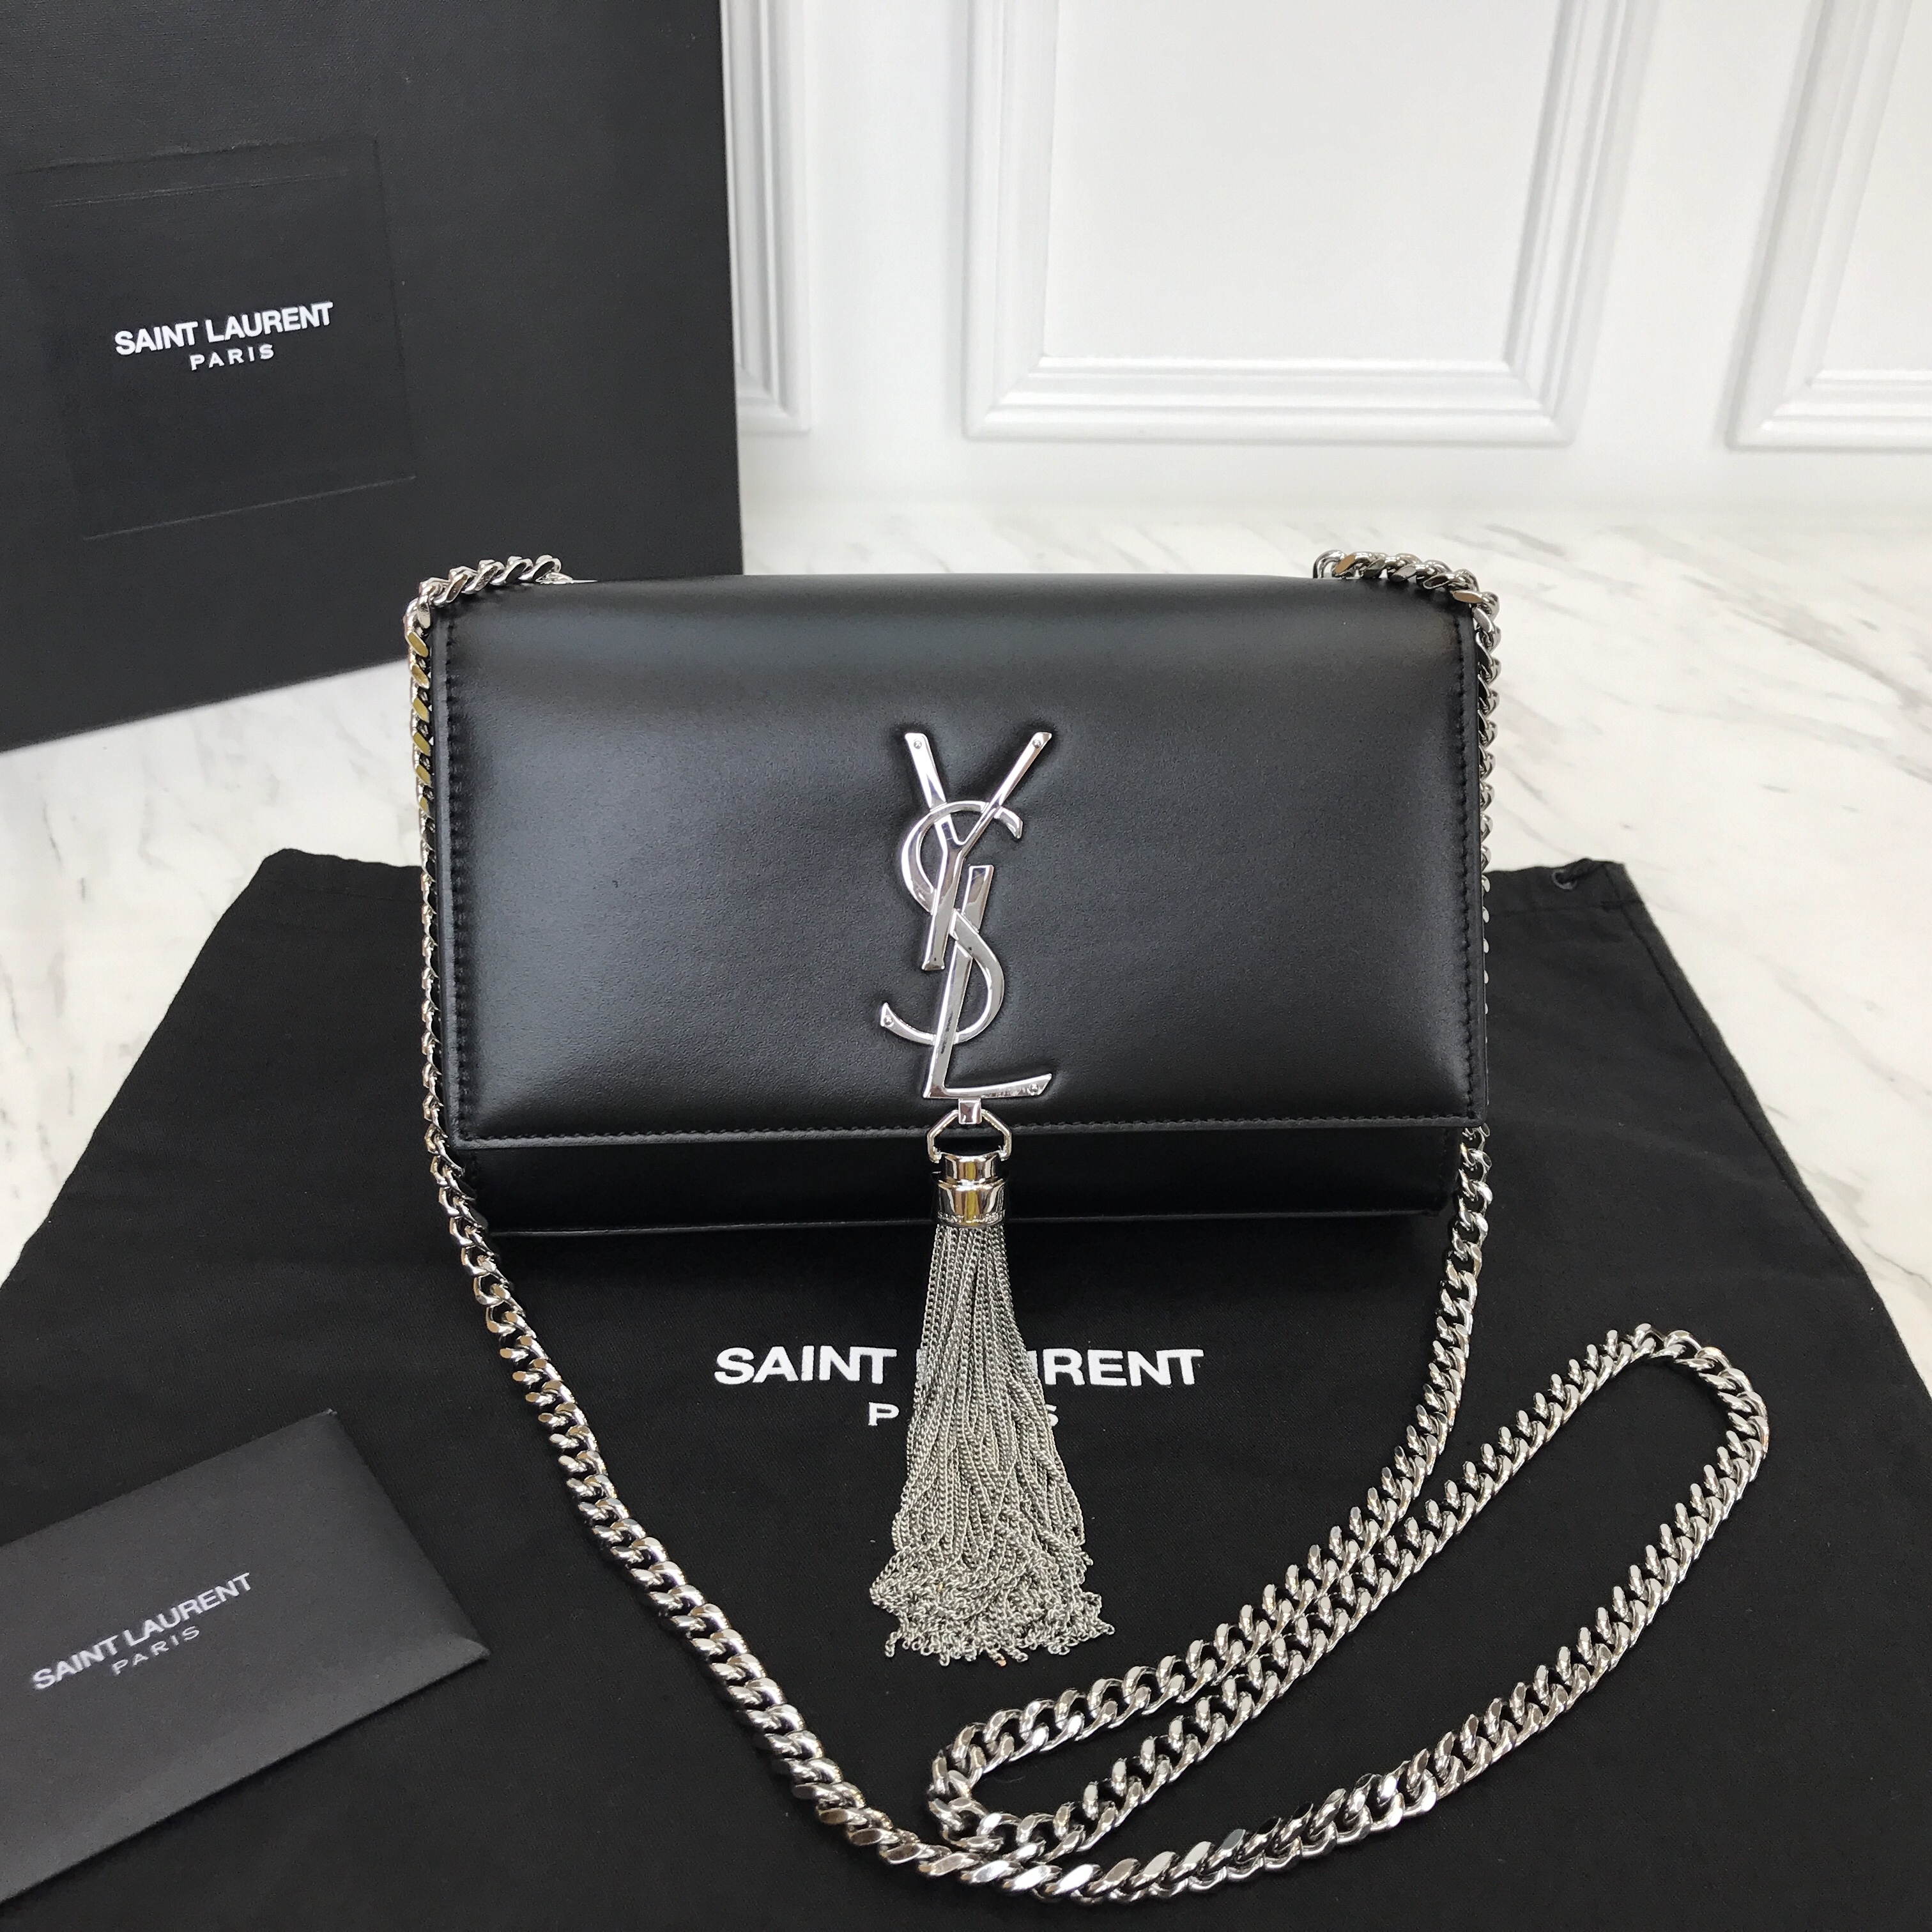 SYL Kate Small Bag Y Yves Saint Laurent St Laurent Bags Ysl Shop Sale Handbags Outlet Online 1540202350618 1 